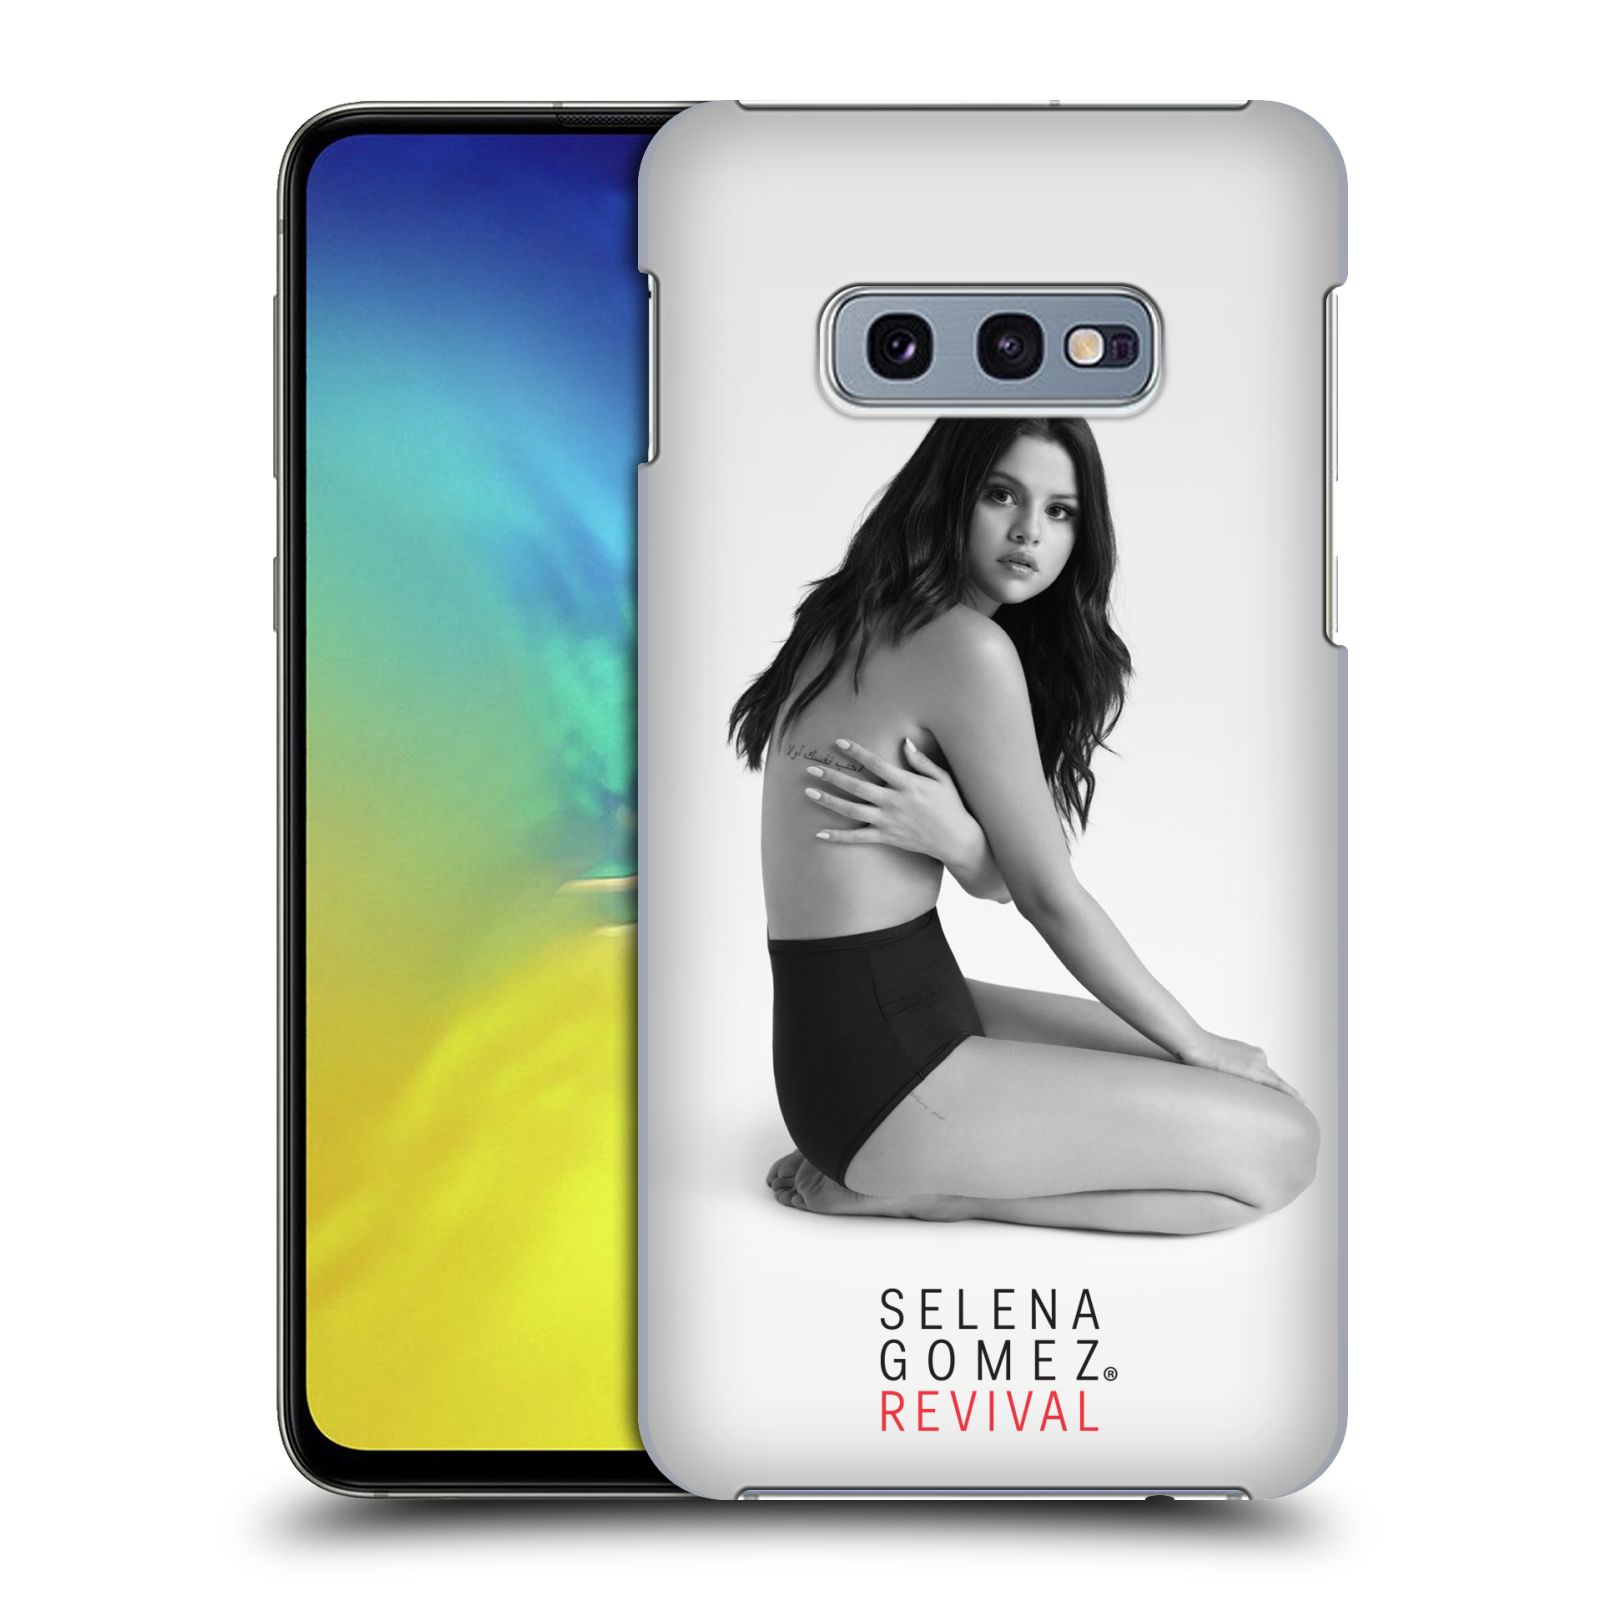 Pouzdro na mobil Samsung Galaxy S10e - HEAD CASE - Zpěvačka Selena Gomez foto Revival profil